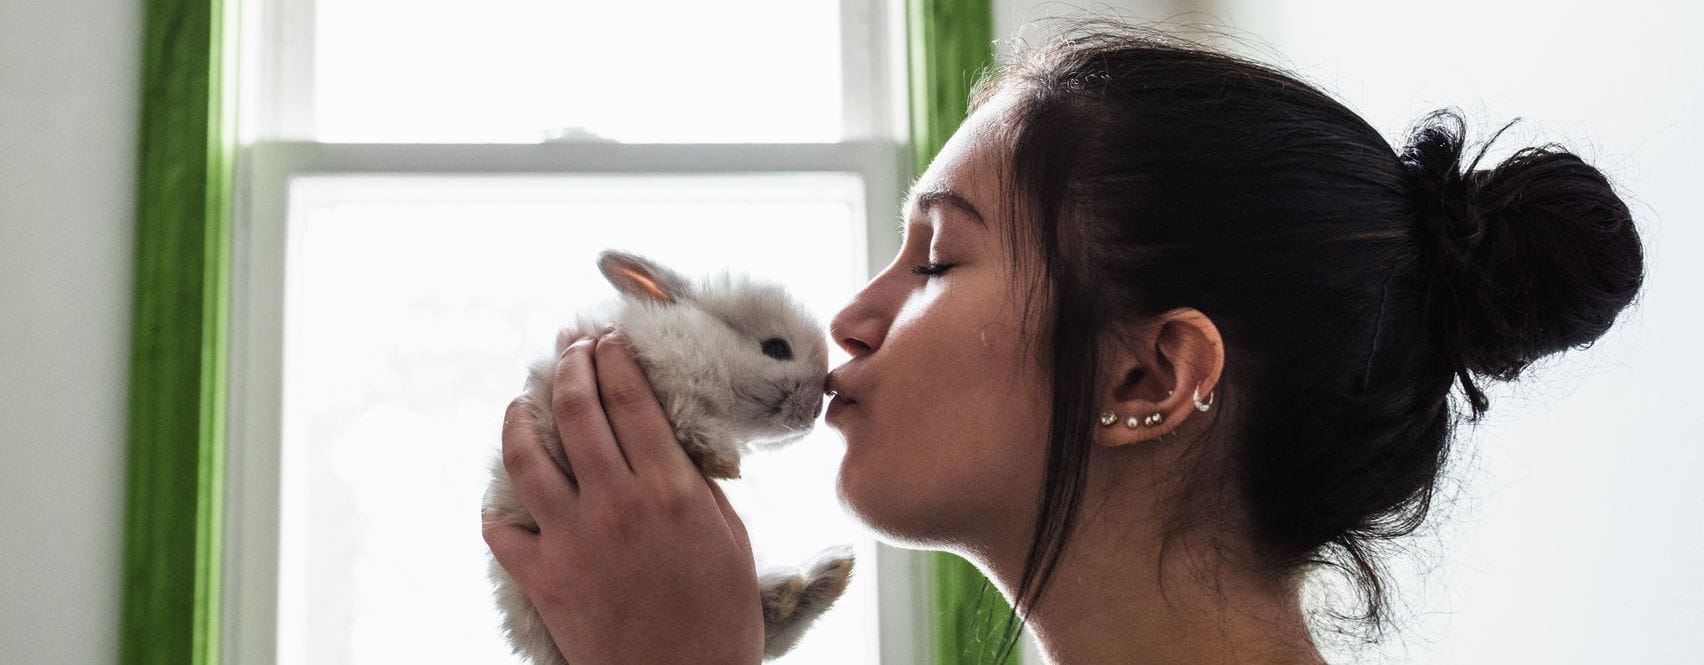 mulher a dar um beijo a um coelho